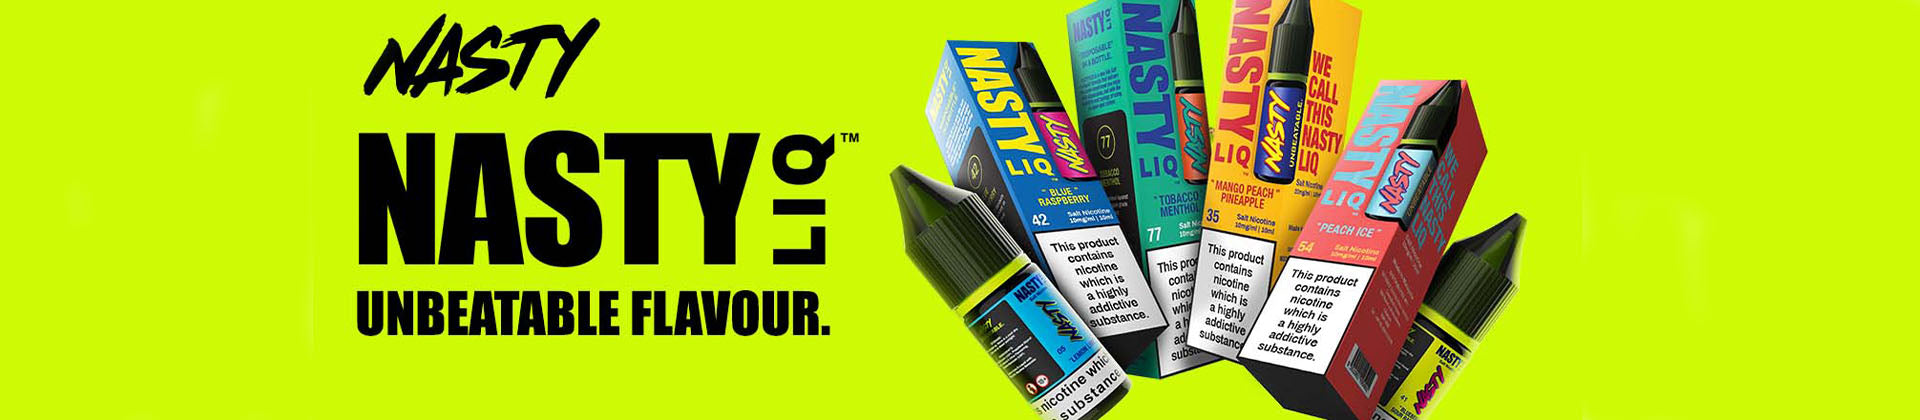 Nasty Liq 10ml e-liquid banner 